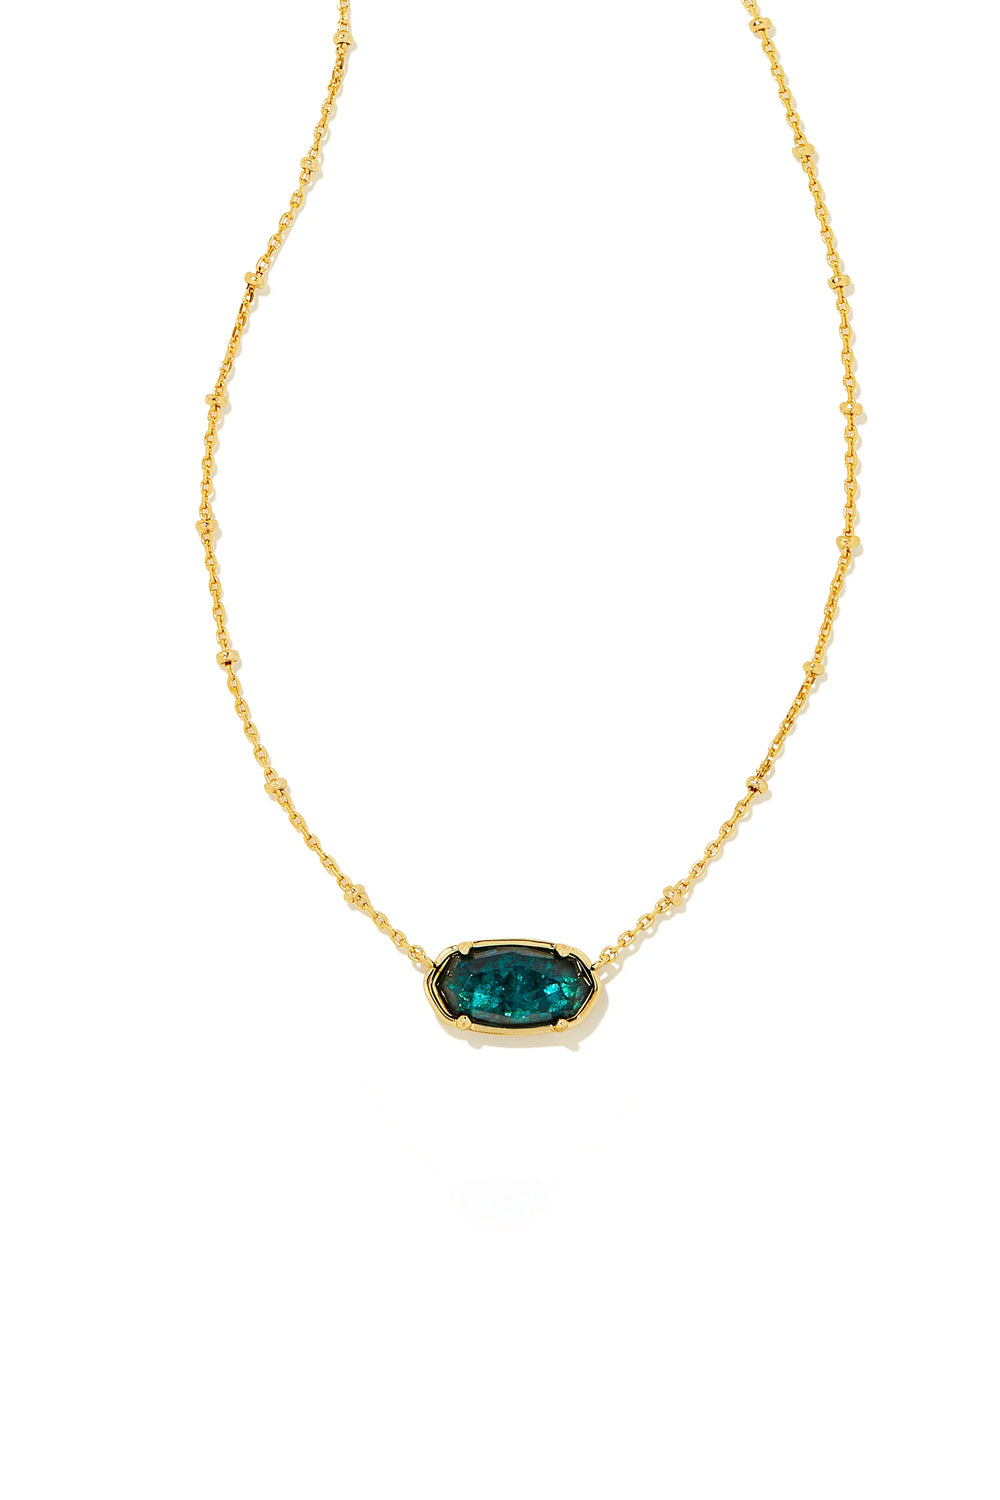 Kendra Scott Juliette Silver Delicate Chain Bracelet in Whit | Meigs  Jewelry | Tahlequah, OK